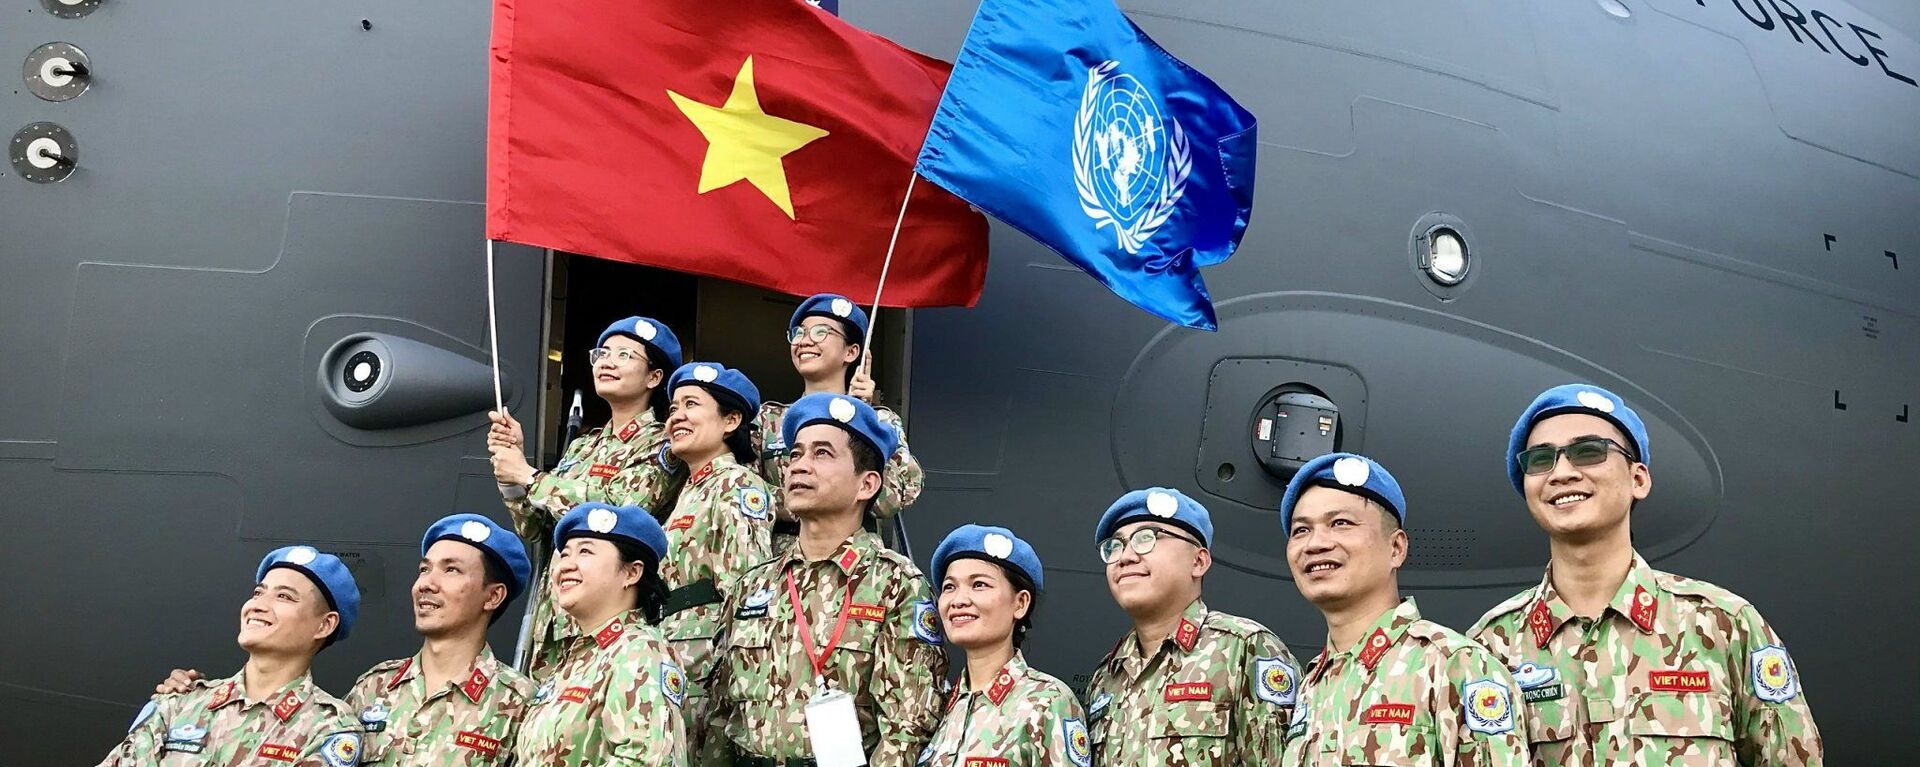 Gìn giữ hòa bình Liên hợp quốc: Điểm sáng của Việt Nam trong đối ngoại quốc phòng. - Sputnik Việt Nam, 1920, 29.05.2021